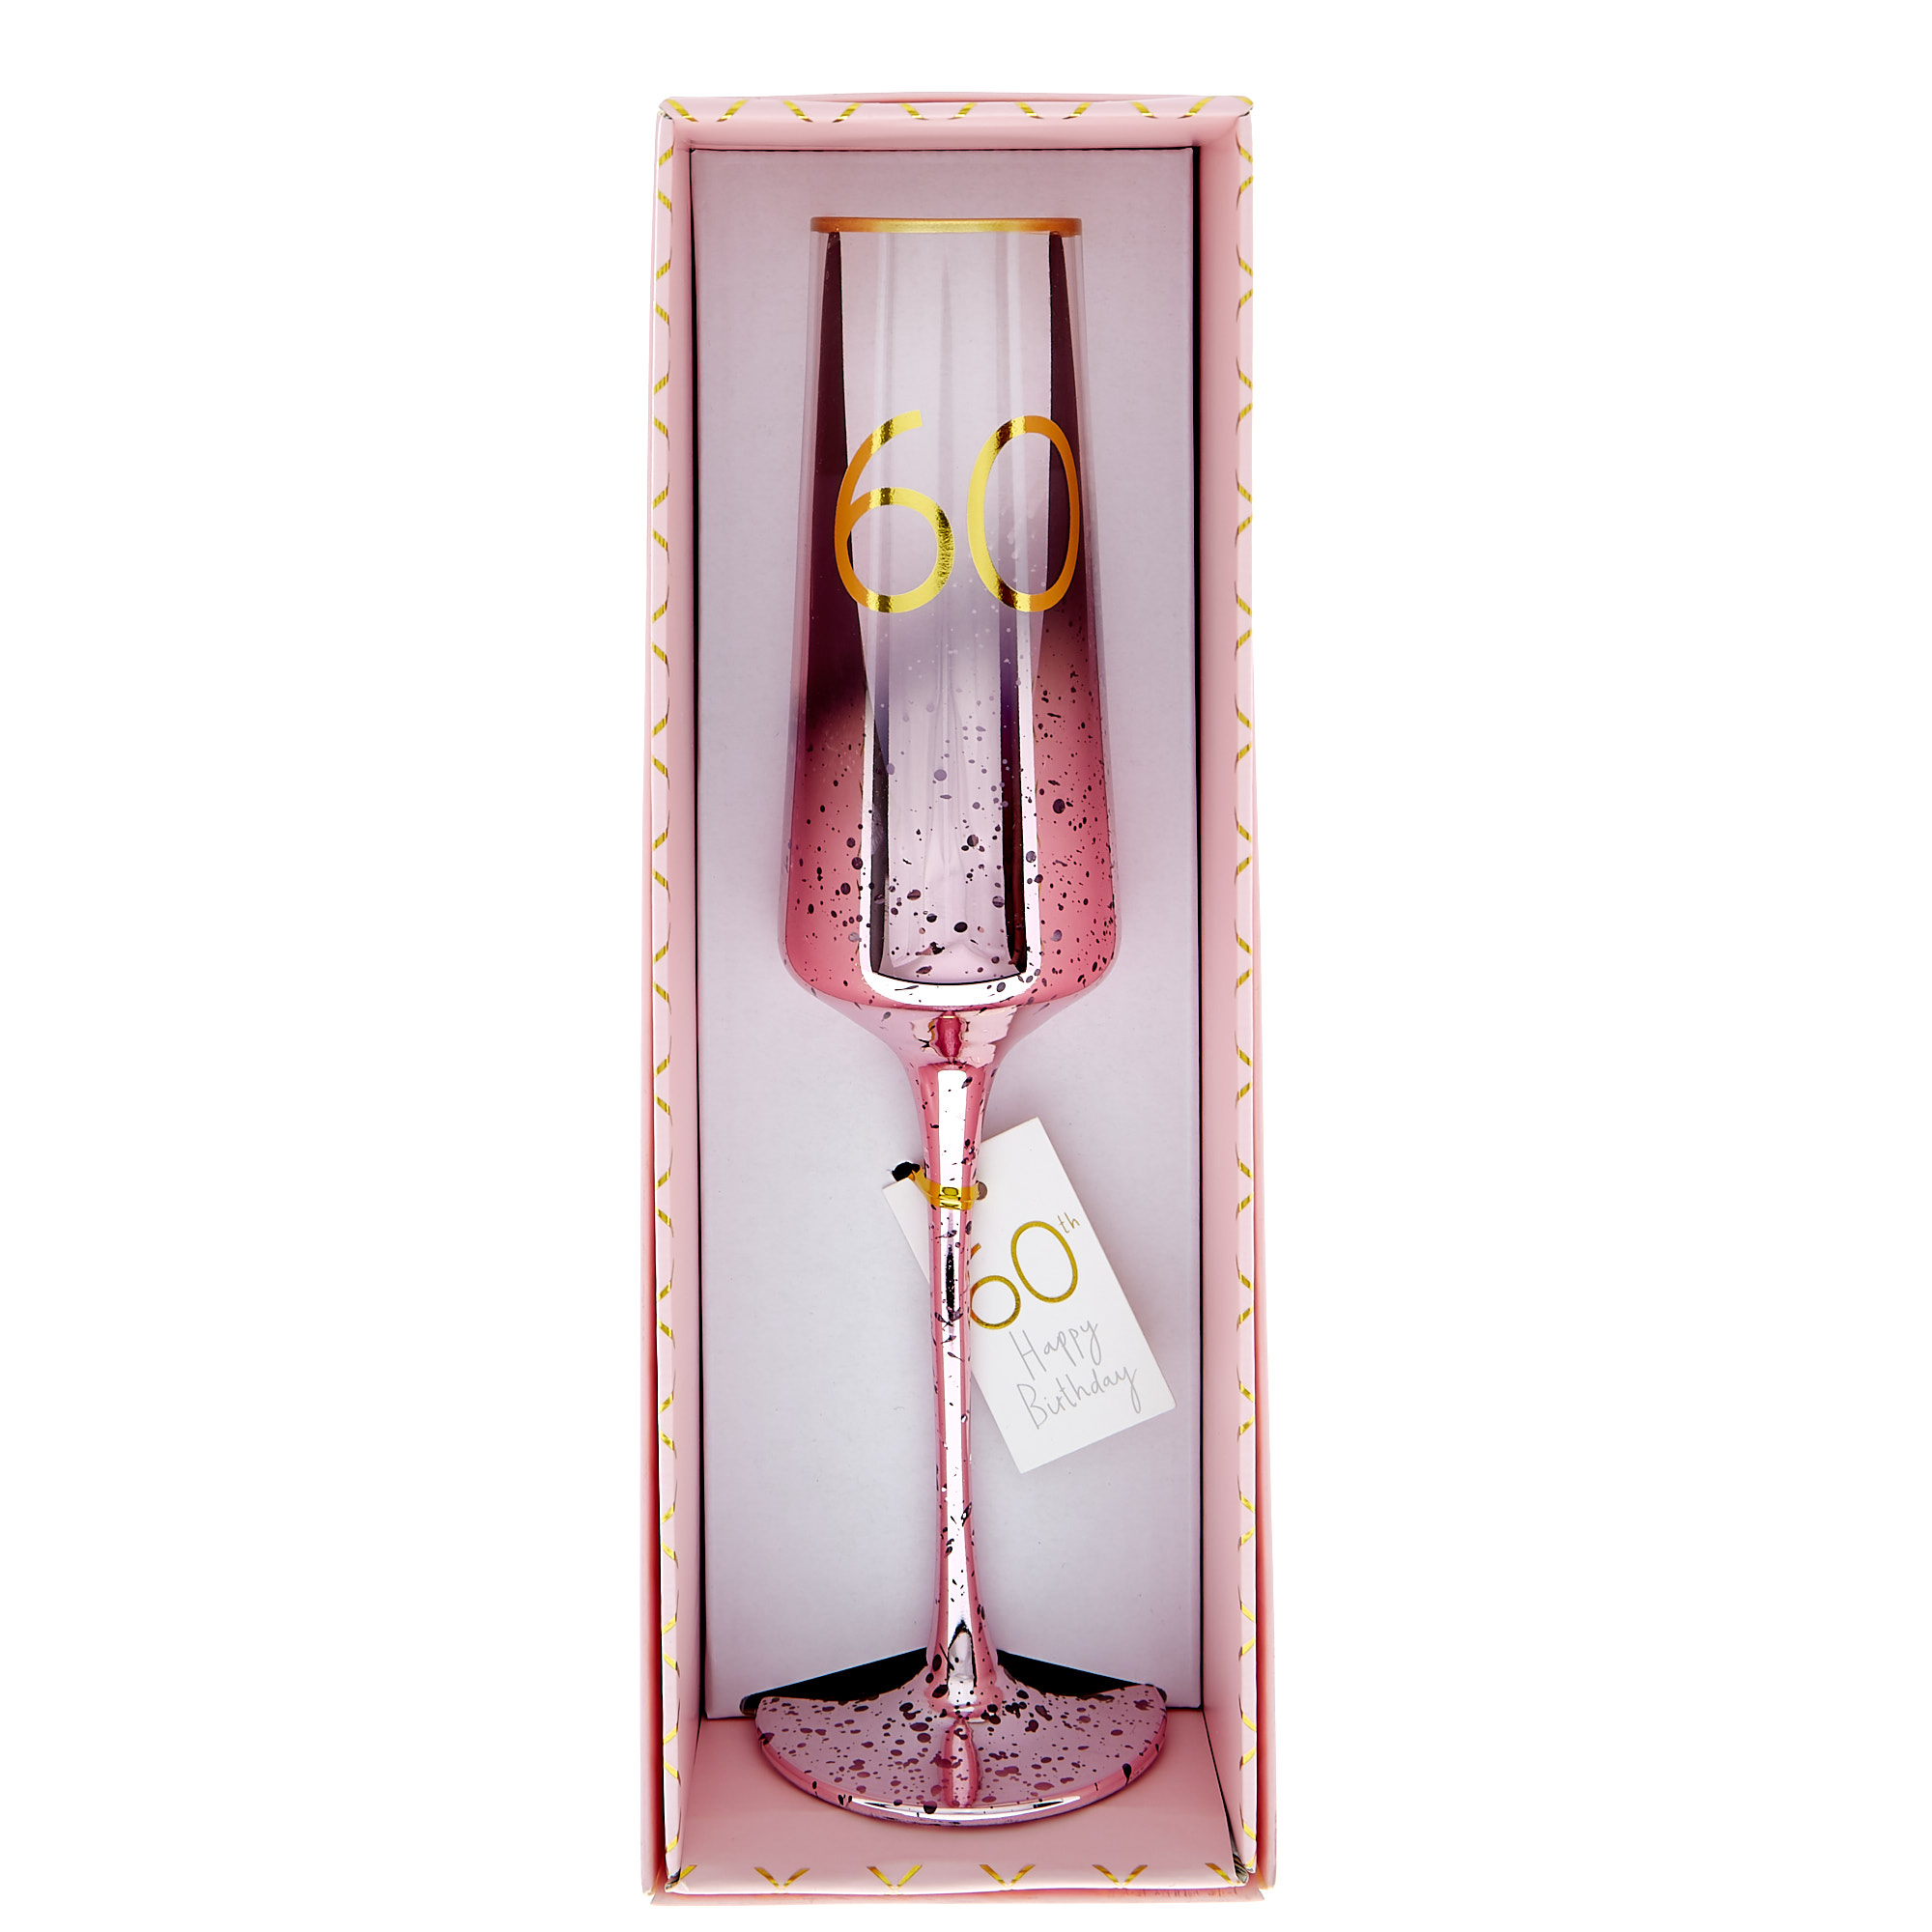 Fatto a Mano 60 To My Husband 60 Flute da Champagne Happy Birthday WHITE COTTON CARDS XPD 28-152,40 cm 